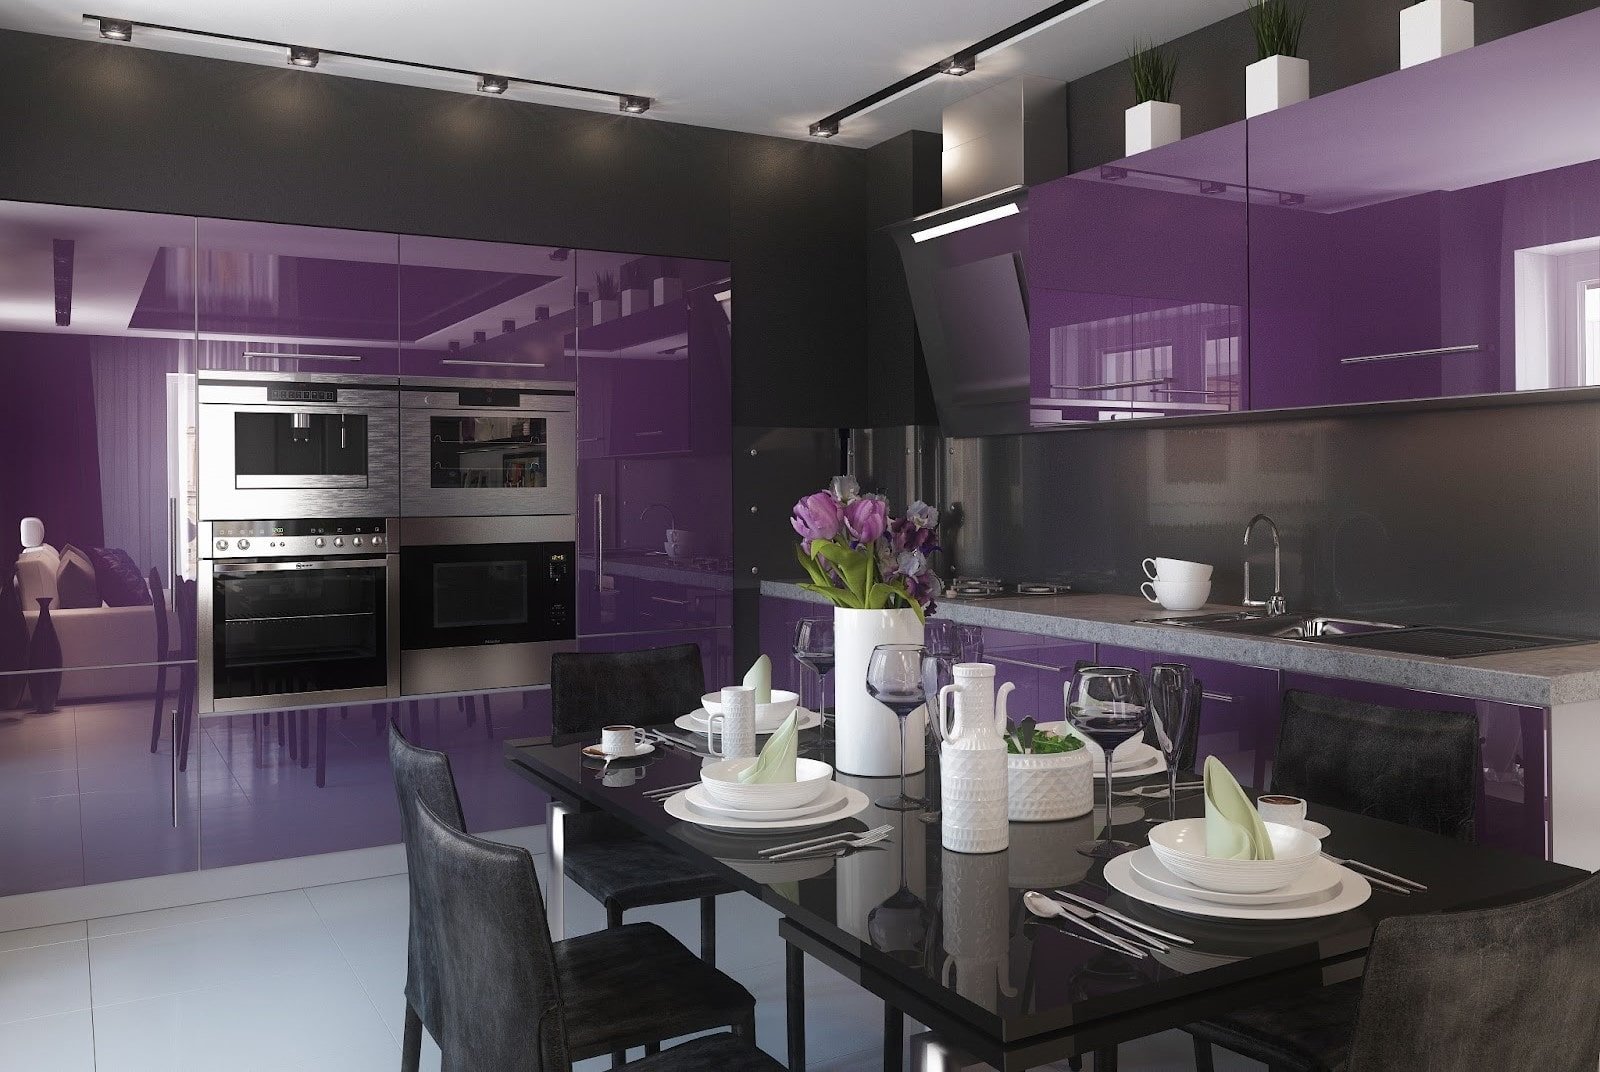 Фиолетовая кухня: фото интересных идей и примеры дизайна кухонного интерьера